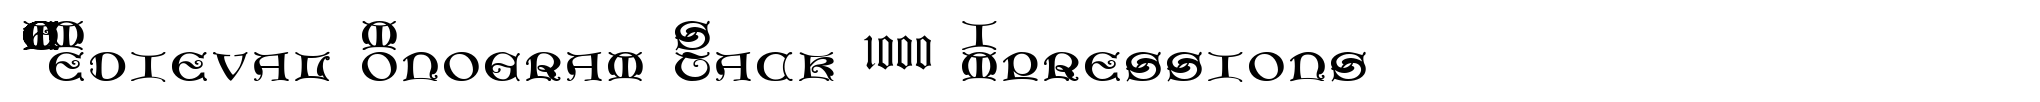 MFC Medieval Monogram Stack 1000 Impressions image